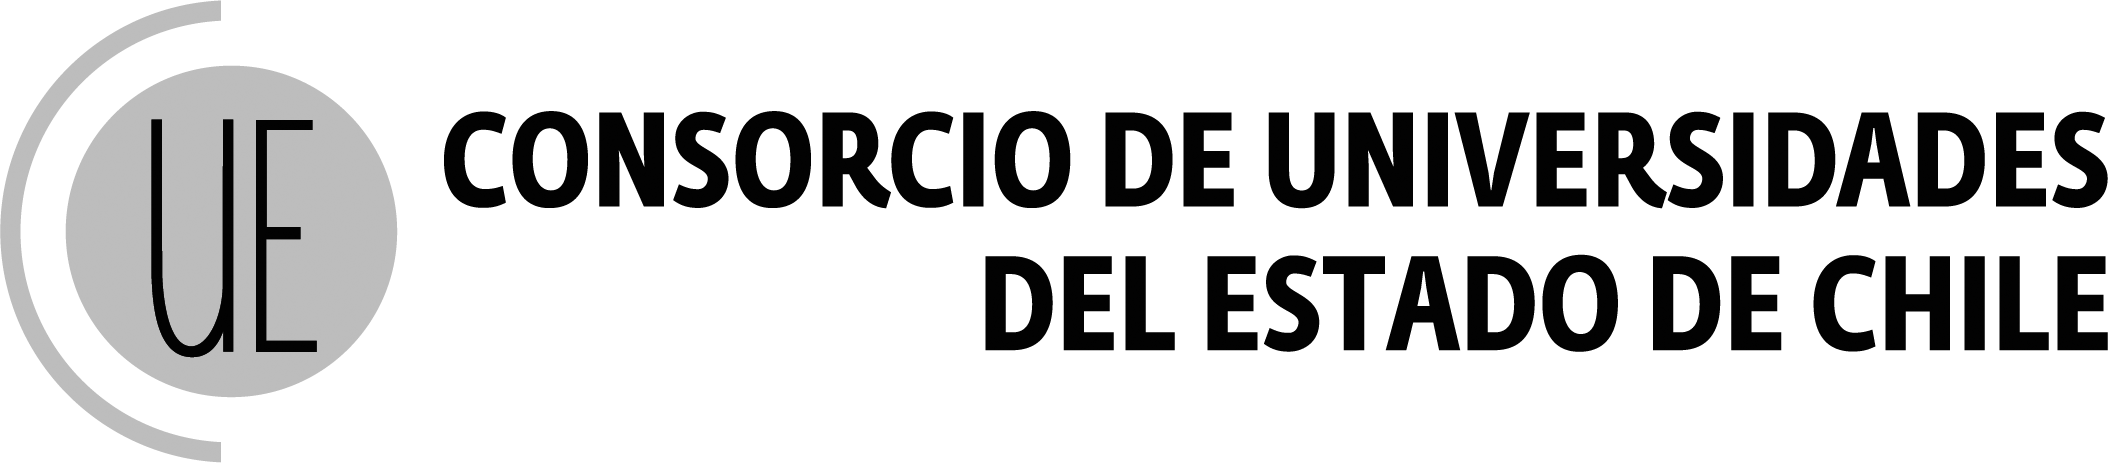 Logo CUECH